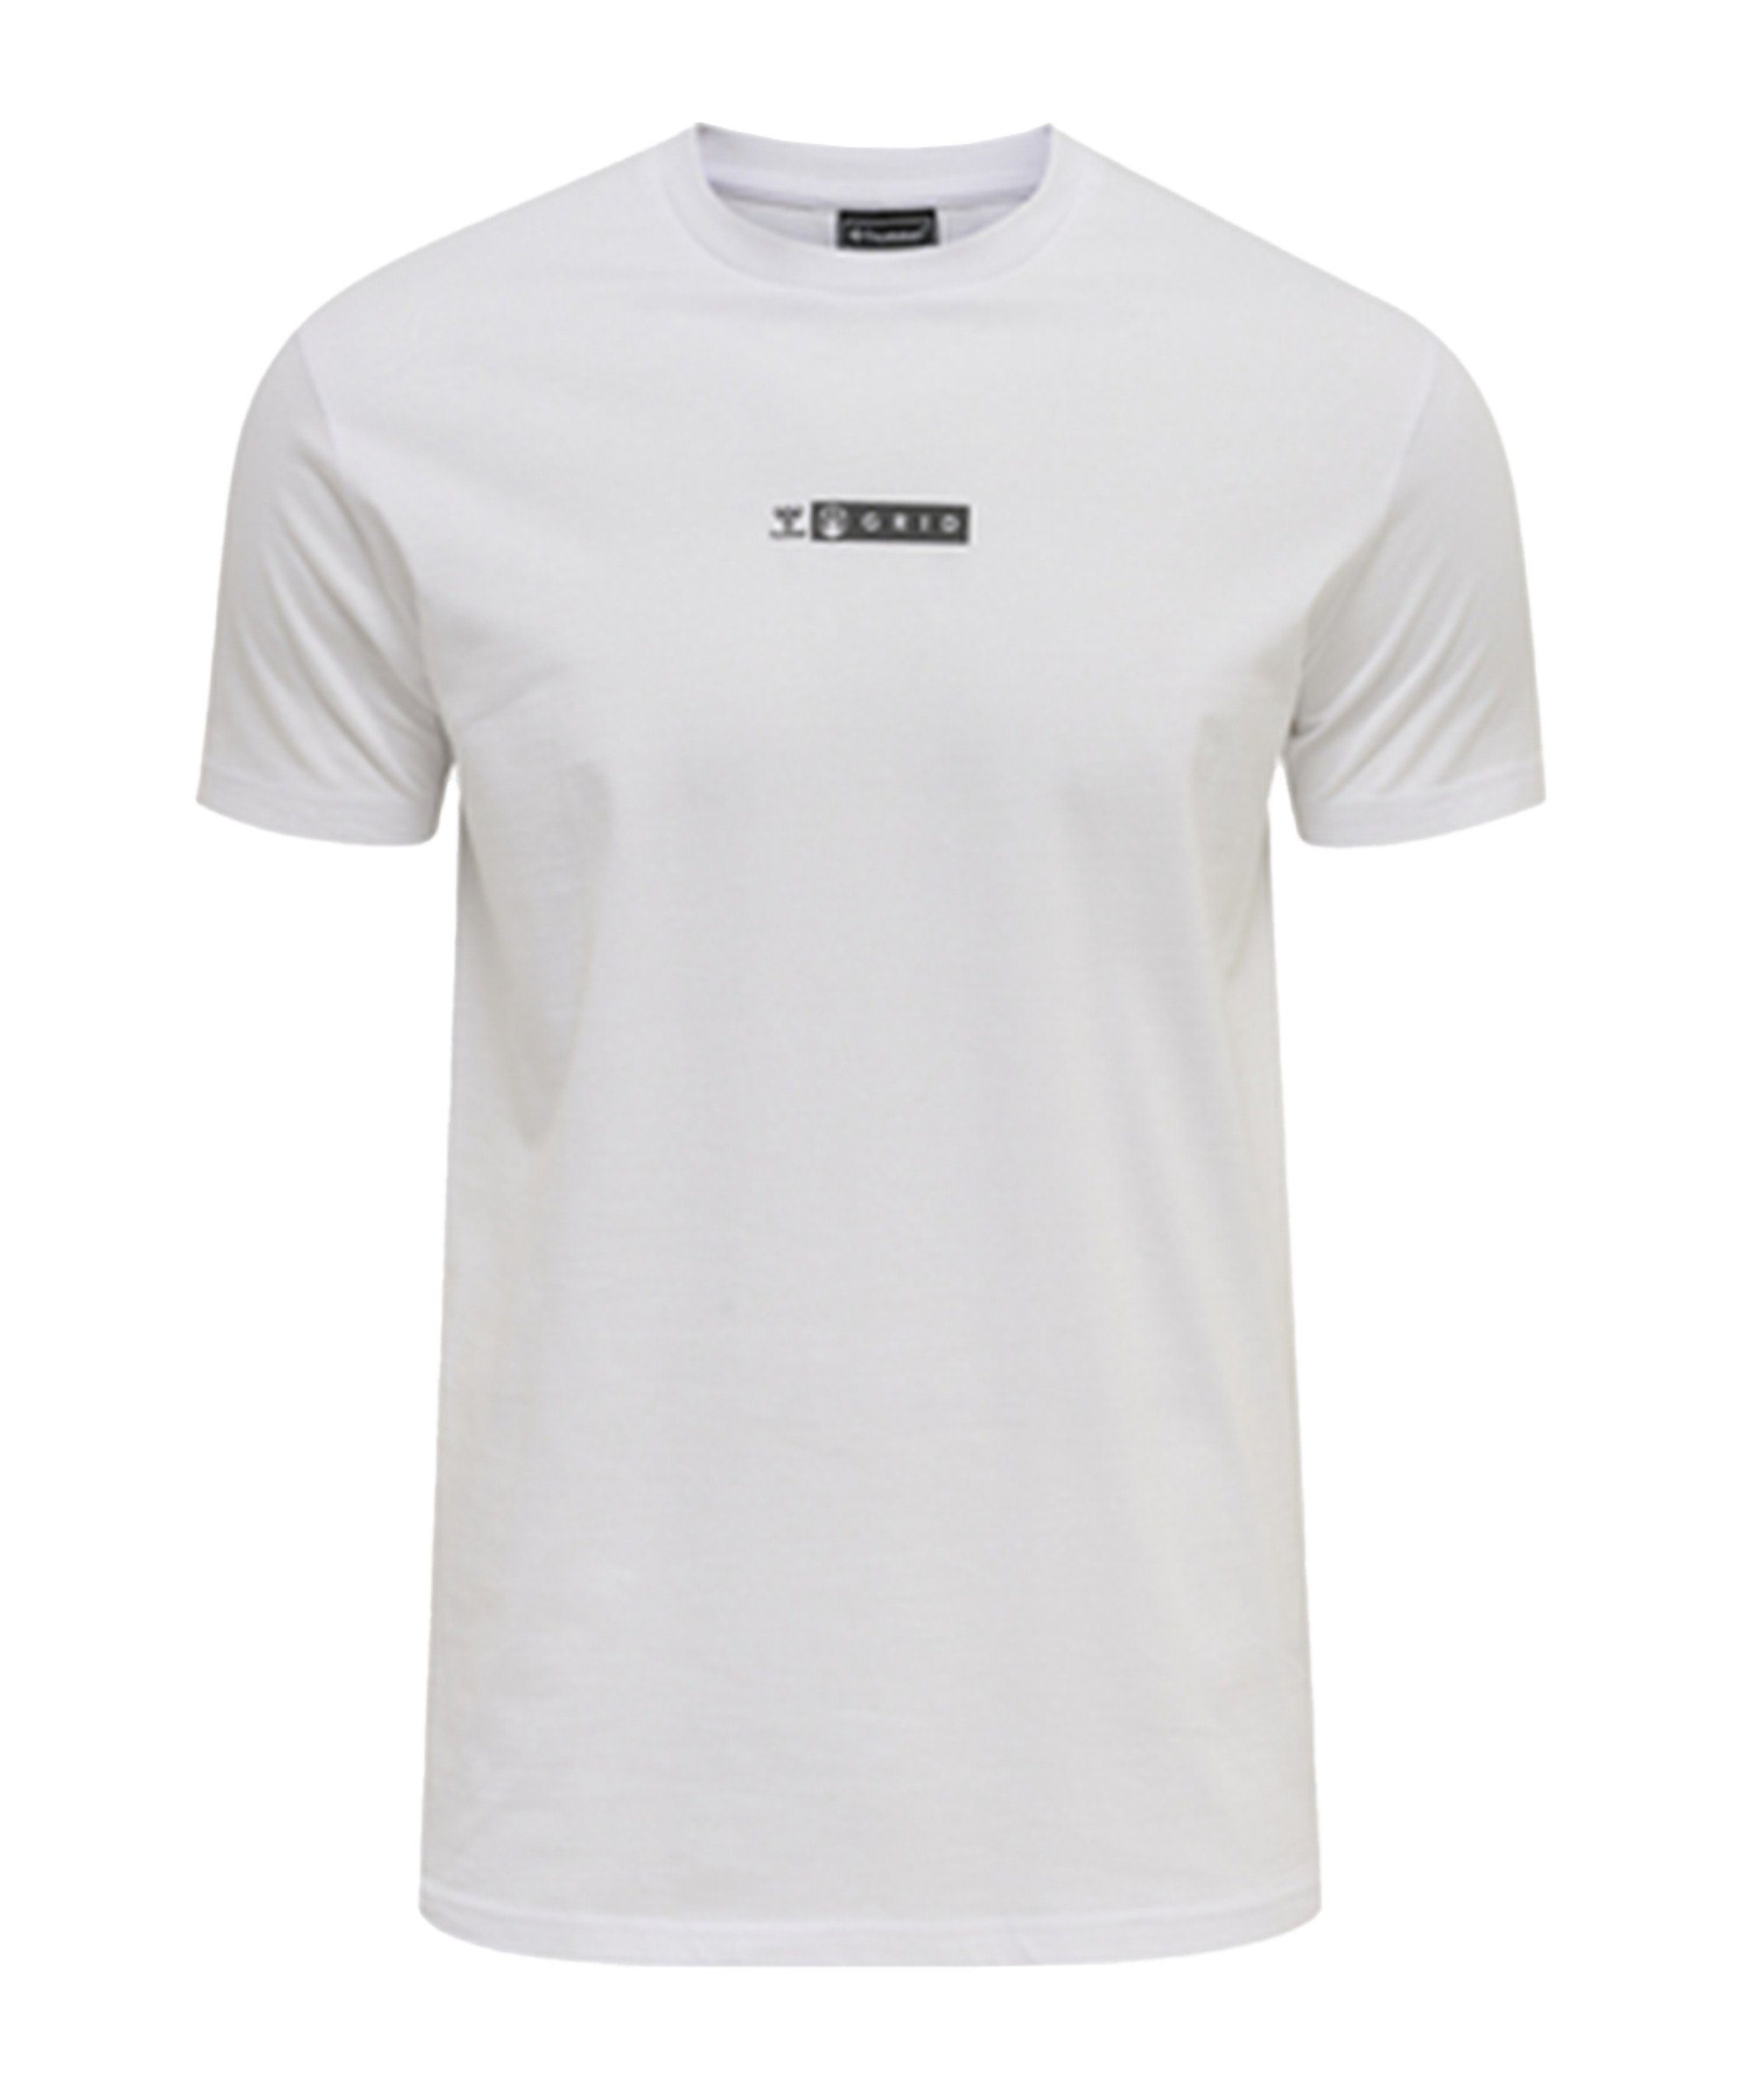 weissgrau T-Shirt hmlOFFGRID T-Shirt hummel default